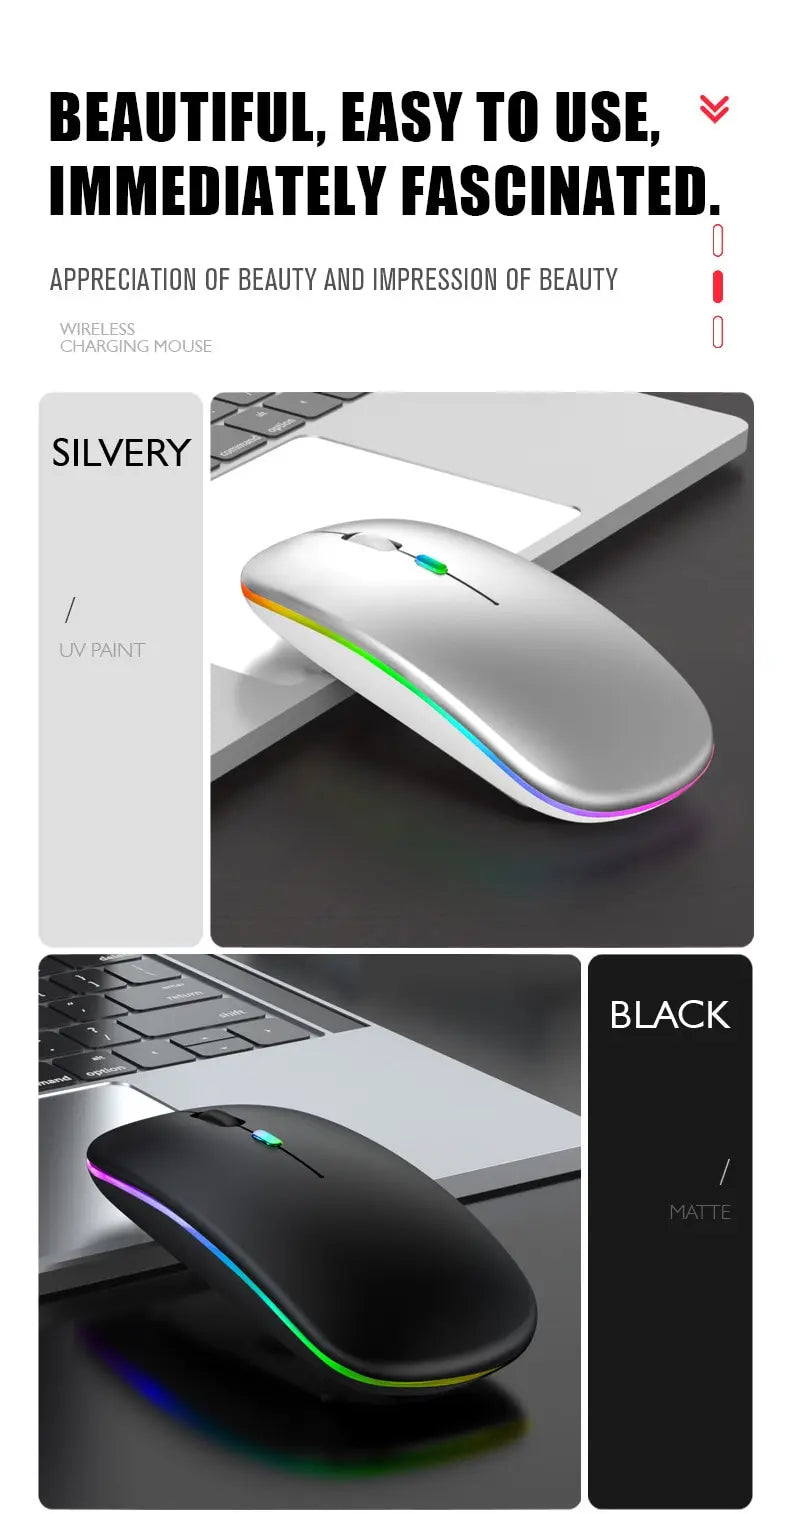 Mouse sem fio LED, fino e recarregável 2,4G